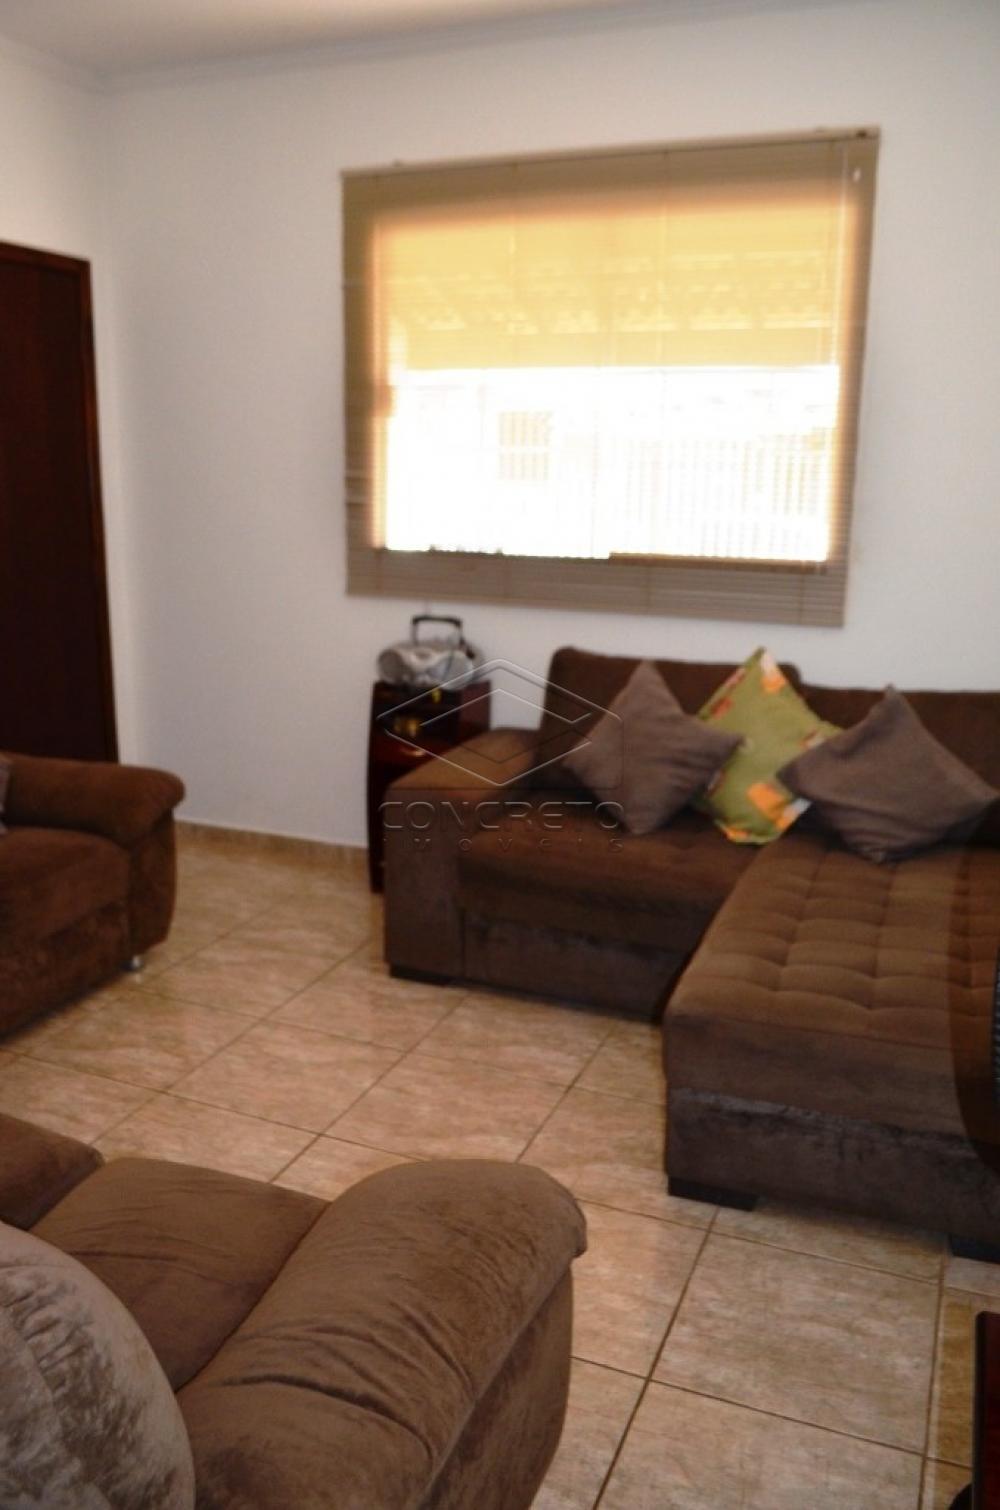 Comprar Casa / Residencia em Bauru R$ 300.000,00 - Foto 8